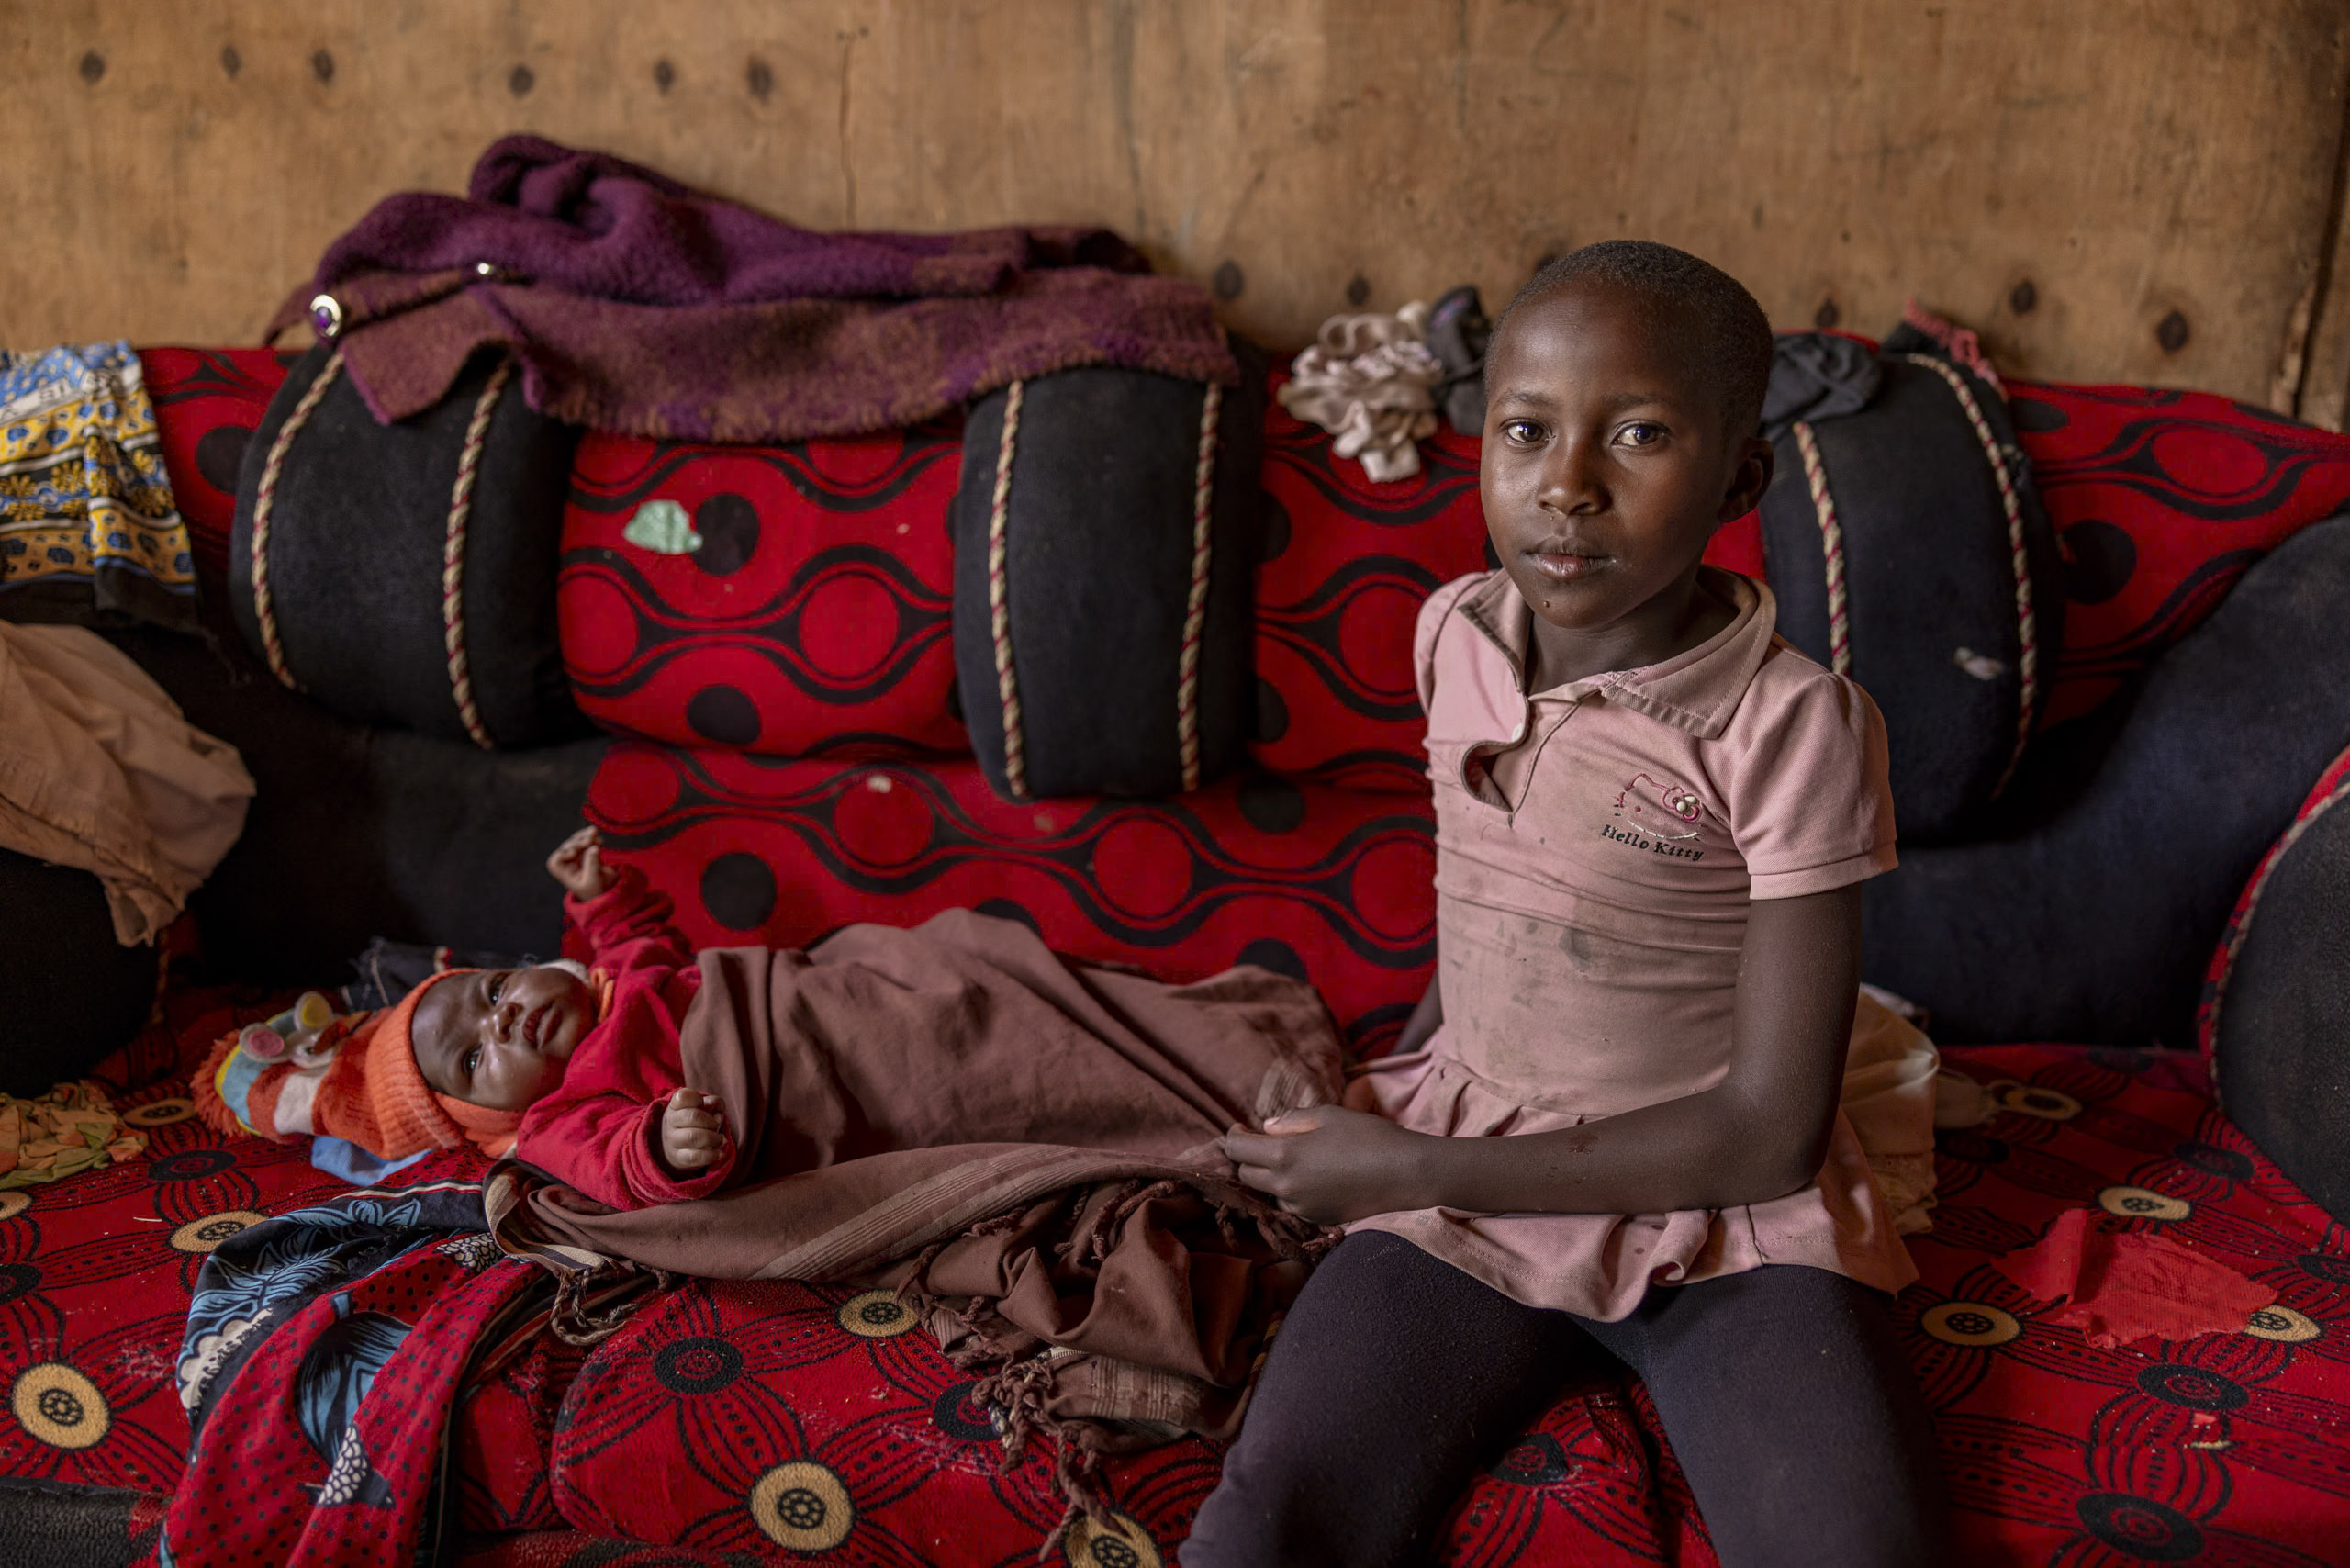 Ein junges Mädchen sitzt neben einem schlafenden Baby in einem schwach beleuchteten Raum, der durch bunte Kissen und Decken hervorgehoben wird. Das Mädchen blickt mit ernster Miene direkt in die Kamera. © Fotografie Tomas Rodriguez